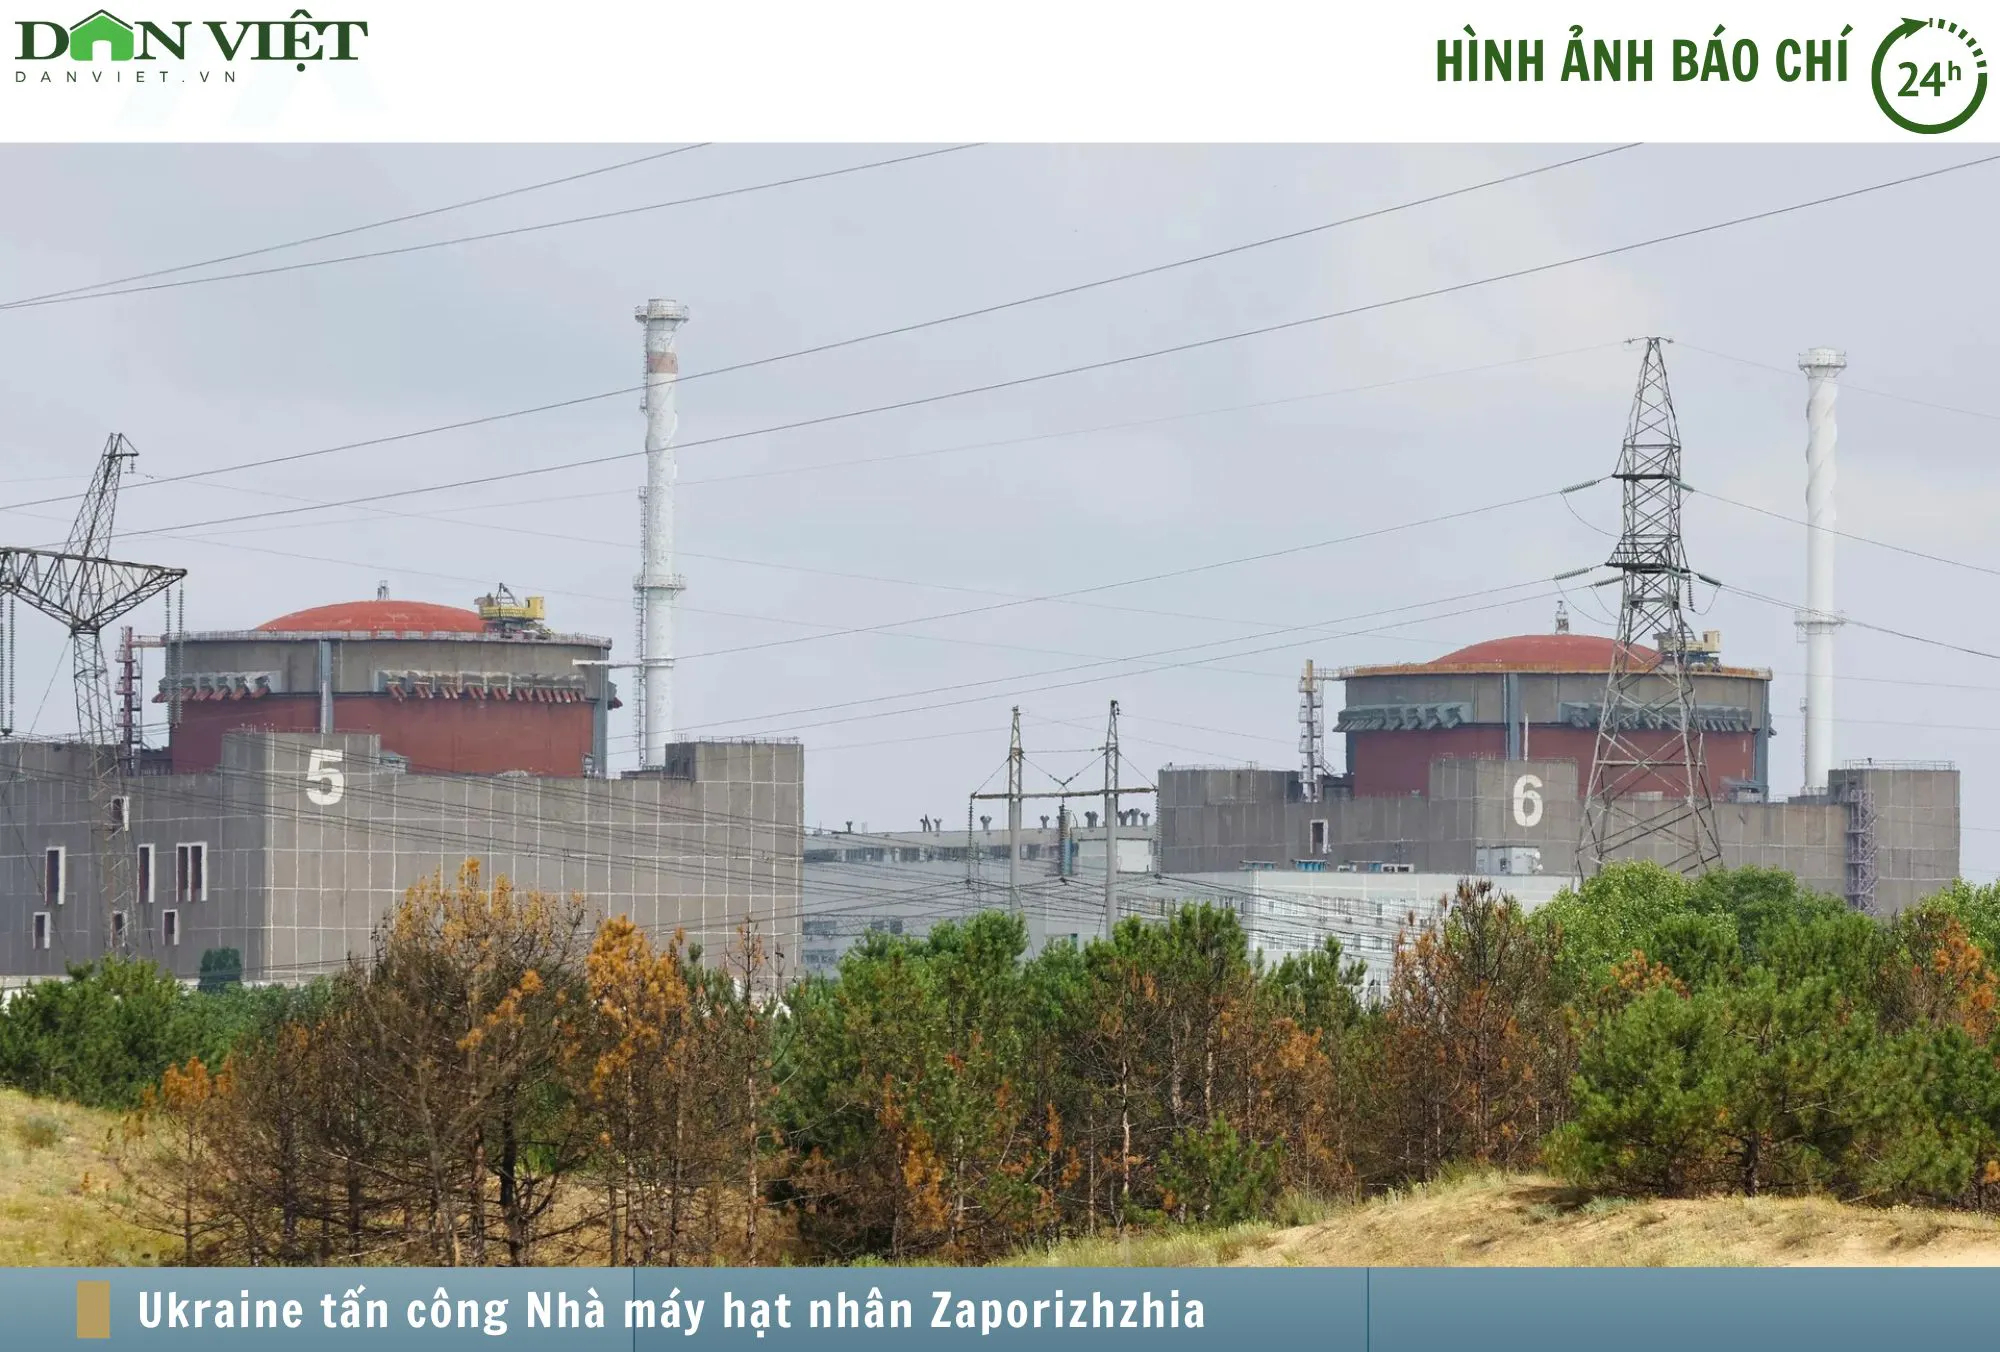 Hình ảnh báo chí 24h: Ukraine tấn công nhà máy hạt nhân do Nga kiểm soát- Ảnh 1.